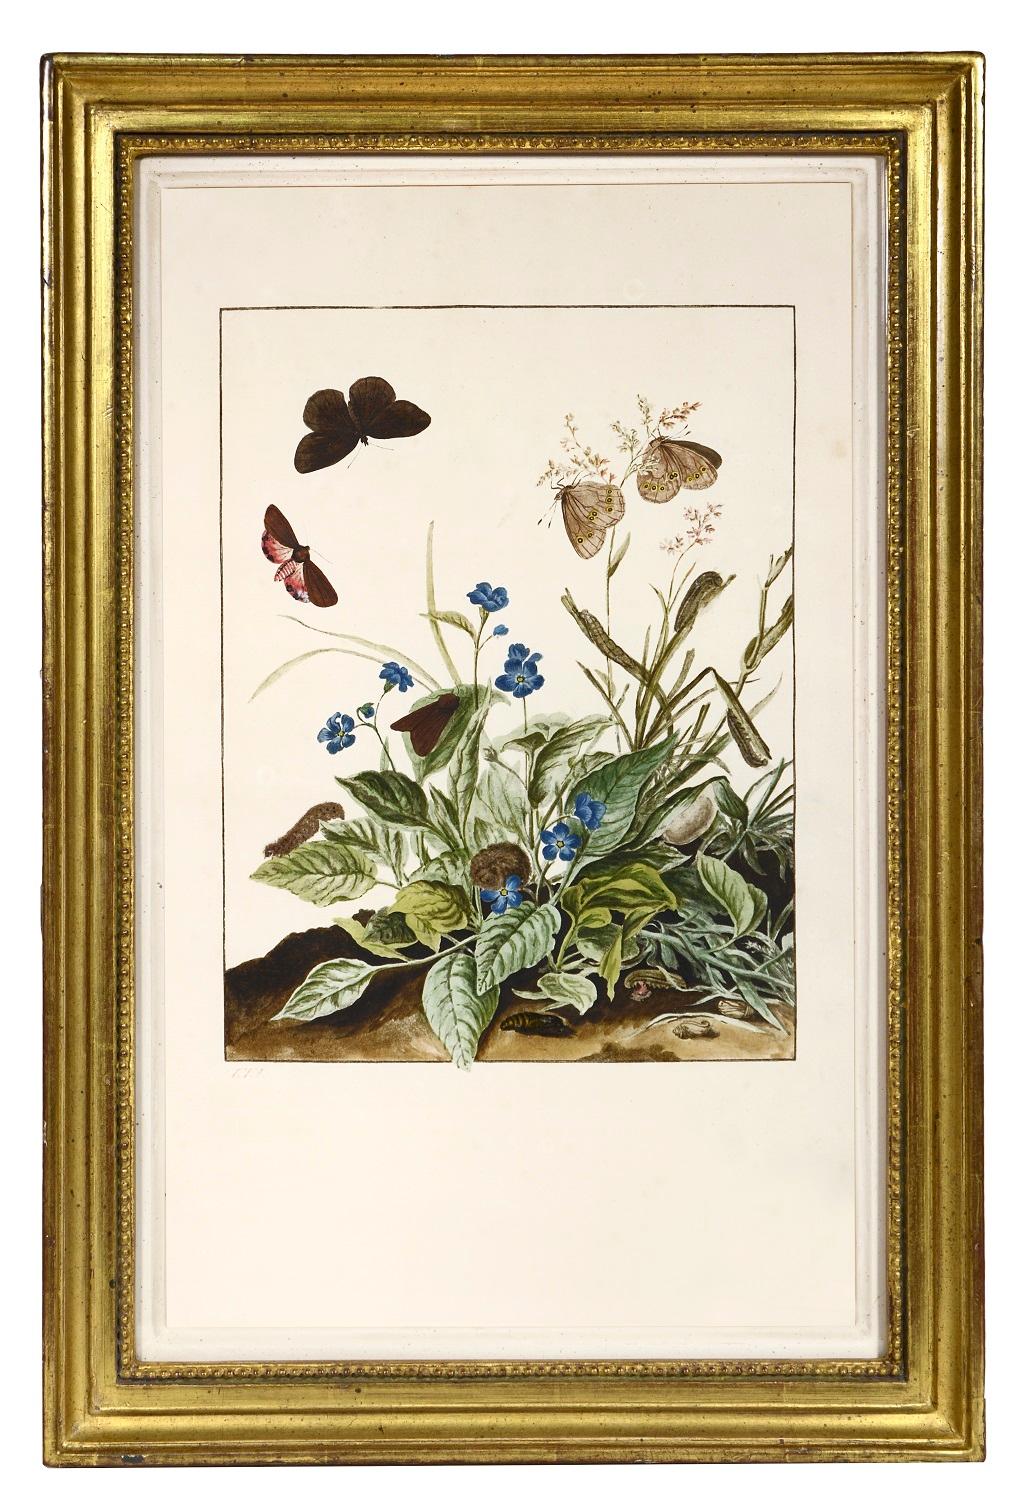 L'ADMIRAL, Jacob.
Groupe de six insectes.   
[Amsterdam, Johannes Sluyter, 1774].

Groupe de six gravures sur cuivre aux belles couleurs d'origine, montrant la métamorphose de papillons, de mites et d'autres insectes volants.

De magnifiques